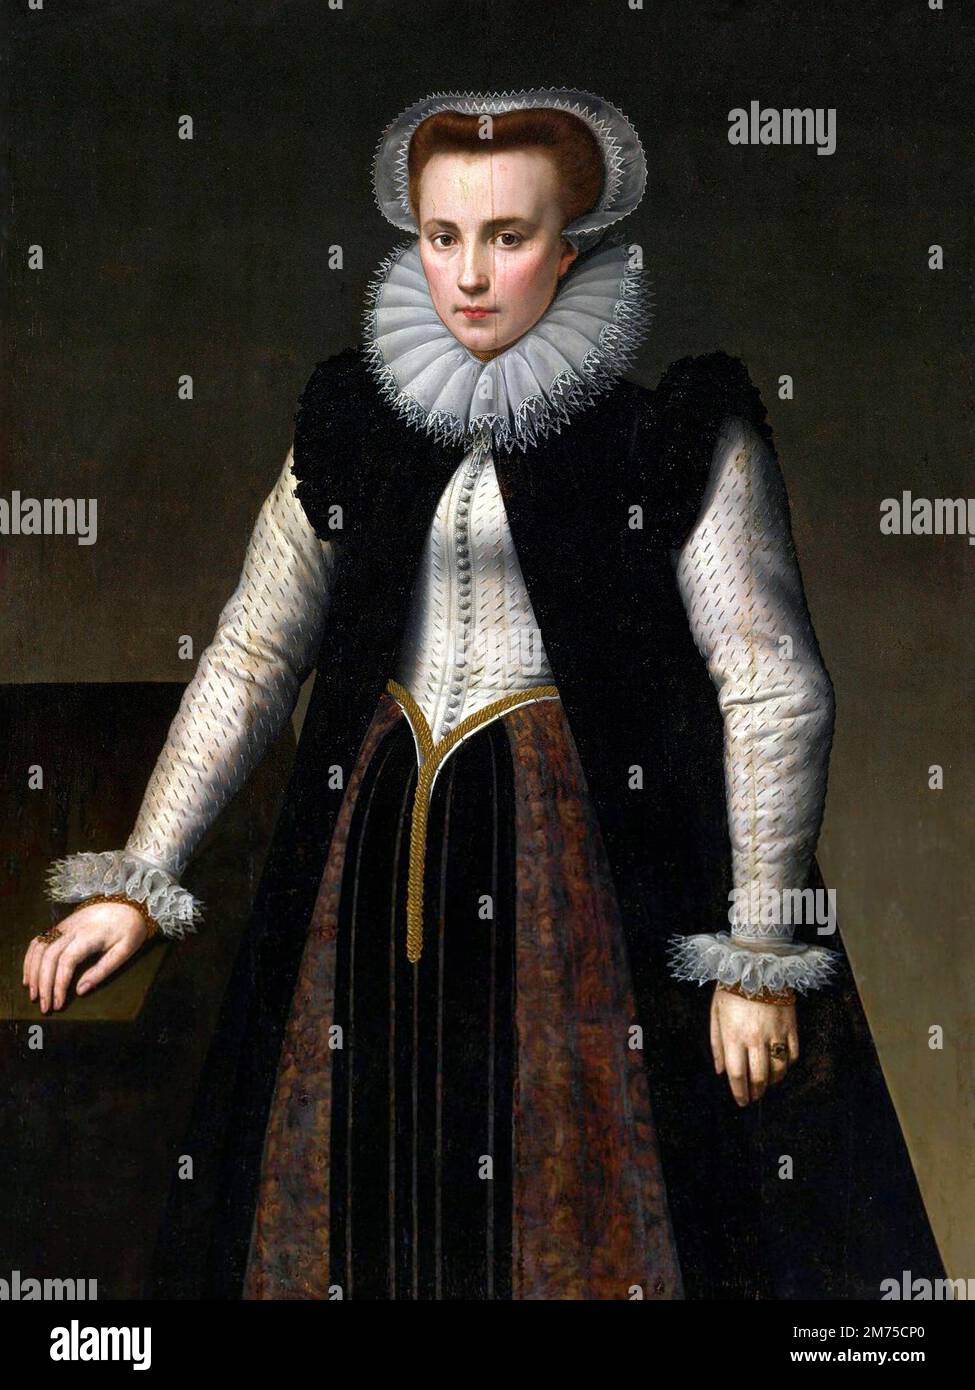 Elizabeth Báthory. Ritratto disputato della contessa Elizabeth Báthory de Ecsed (1560-1614) di Anthonie Blocklandt van Montfoort (1533-1583), olio su tavola, 1580. Bathory era una nobildonna ungherese e presunto serial killer della famiglia di Báthory, che possedeva terreni nel Regno di Ungheria (ora Slovacchia). Lei e quattro dei suoi servitori sono stati accusati di torturare e uccidere centinaia di ragazze e donne tra il 1590 e il 1610. I suoi servi furono processati e condannati, mentre Báthory fu confinato fino alla sua morte. Foto Stock